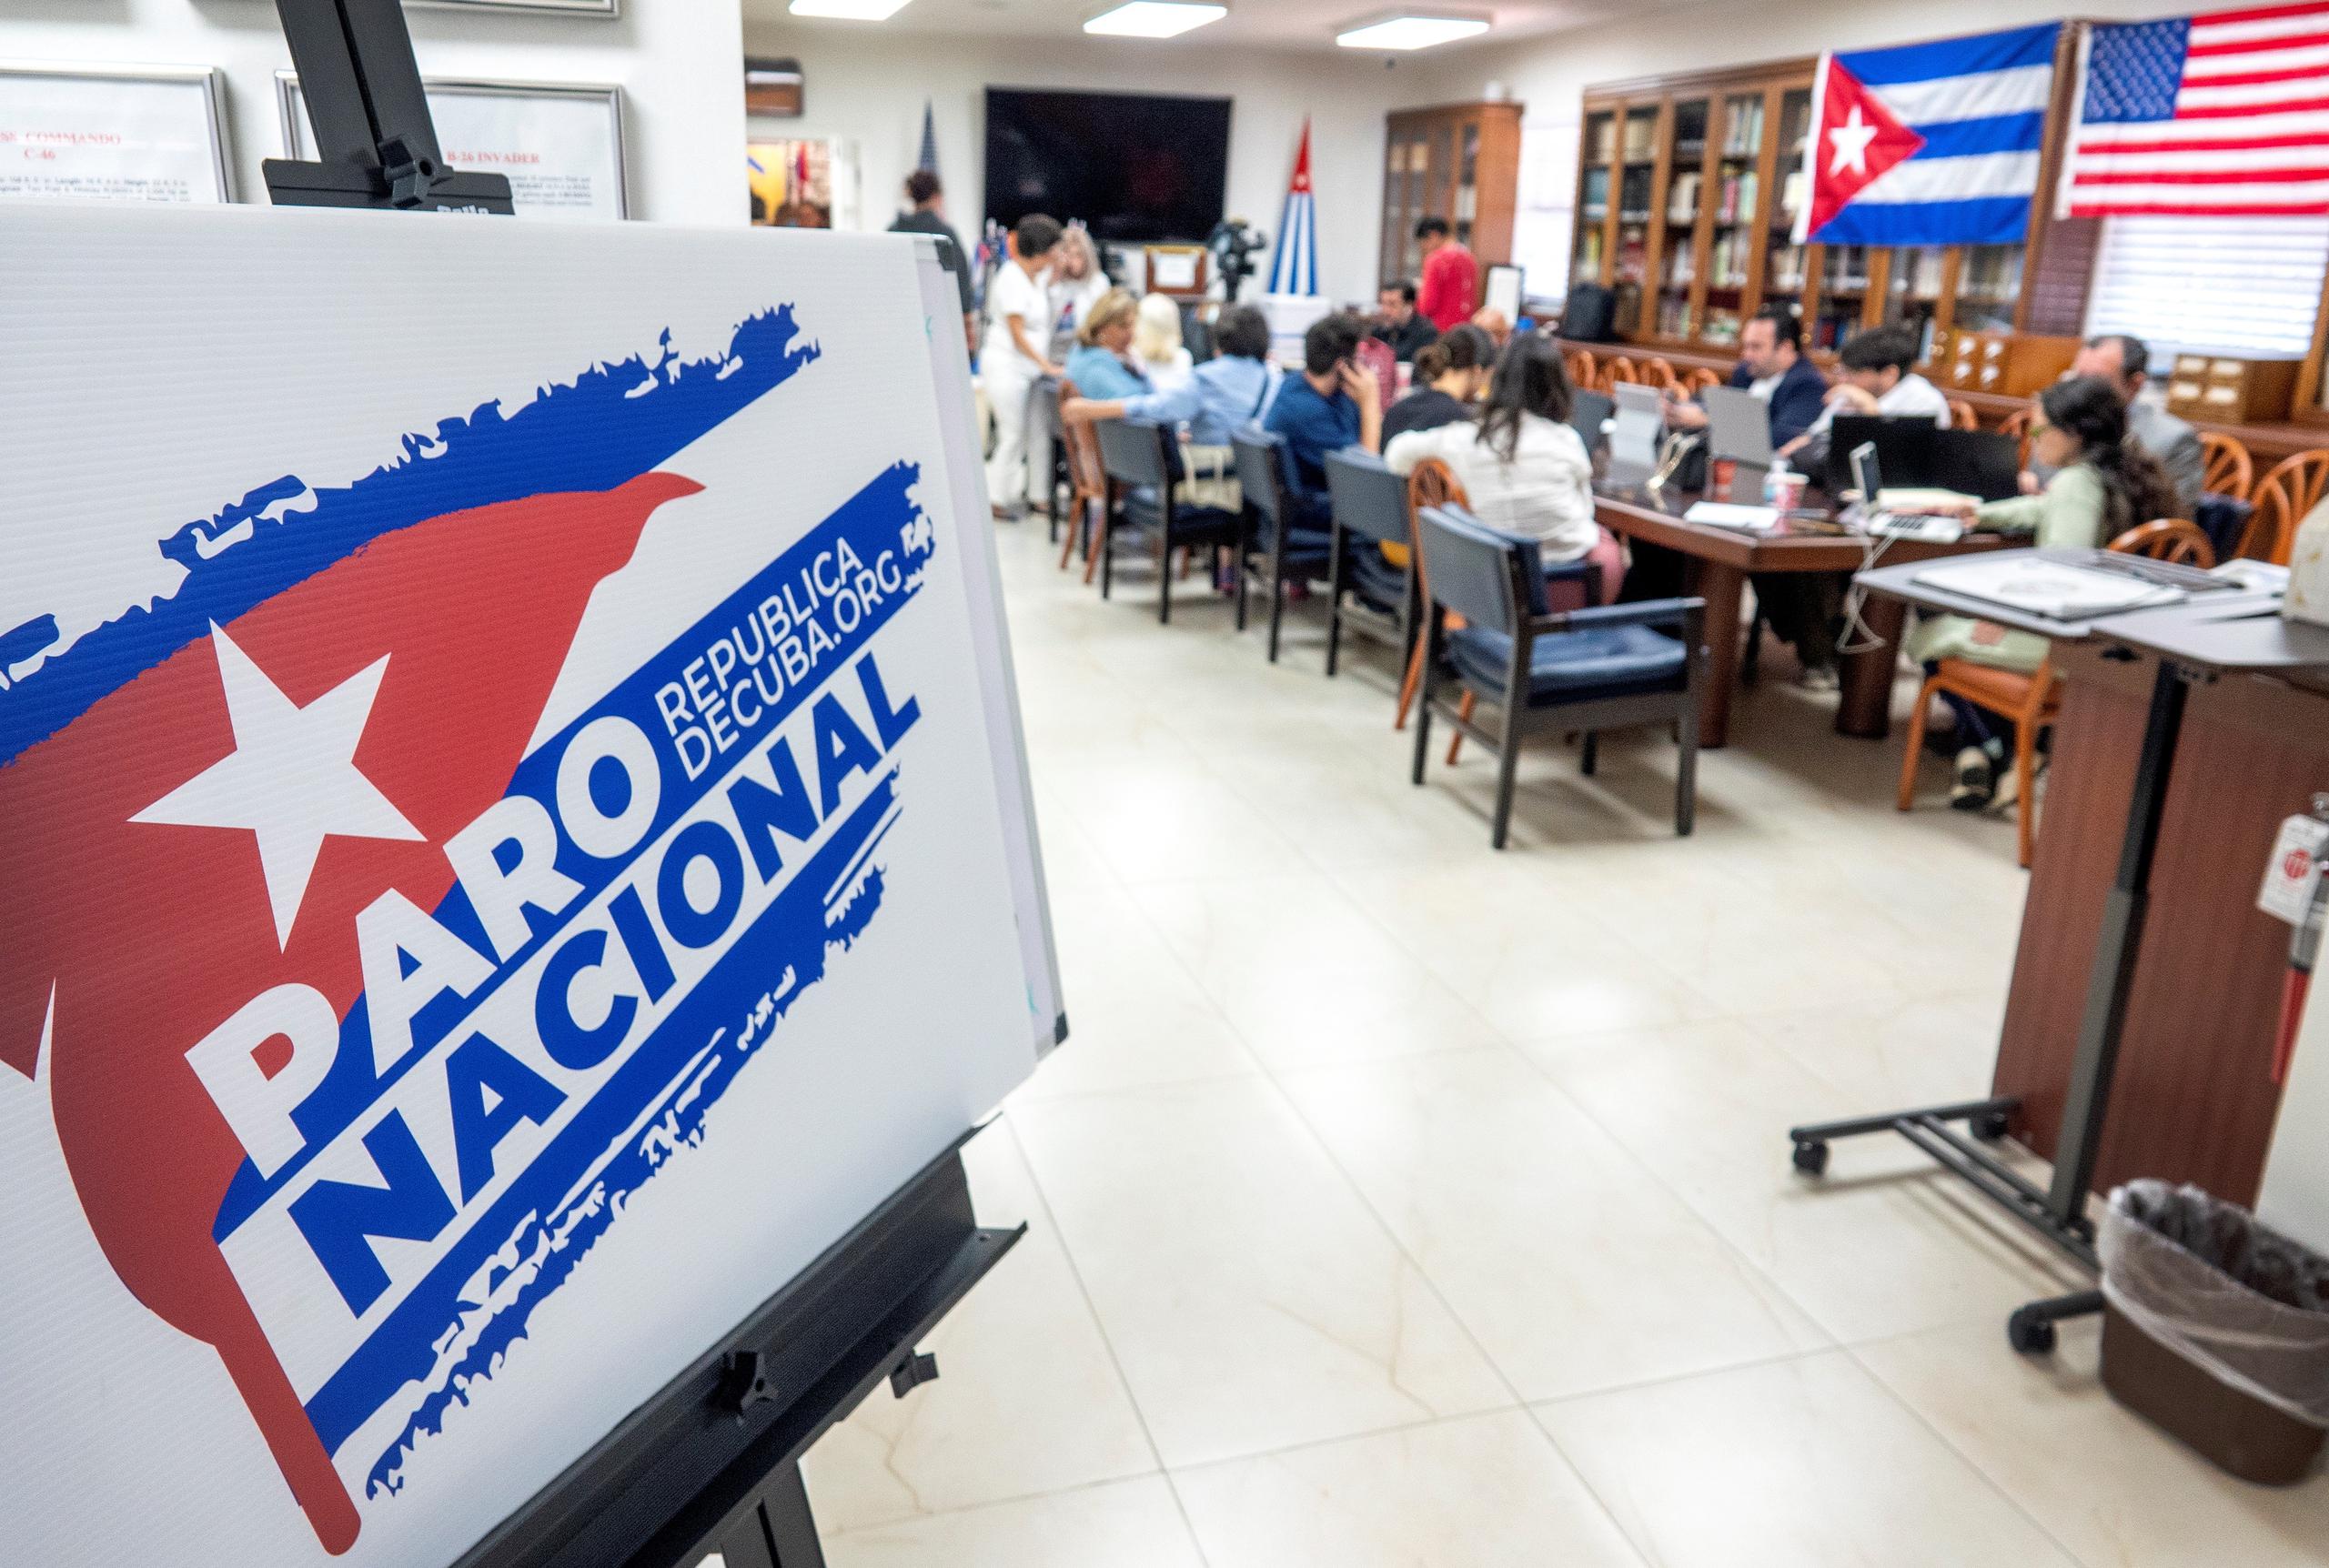 Miembros del exilio cubano y otros activistas están recopilando informes de Cuba en el Centro de Información sobre Cuba, dirigido por la Asamblea de la Resistencia Cubana, en la sede de la Brigada 2506, en Miami, Florida, Estados Unidos, este 15 de noviembre de 2021. EFE/Cristóbal Herrera-Ulashkevich
